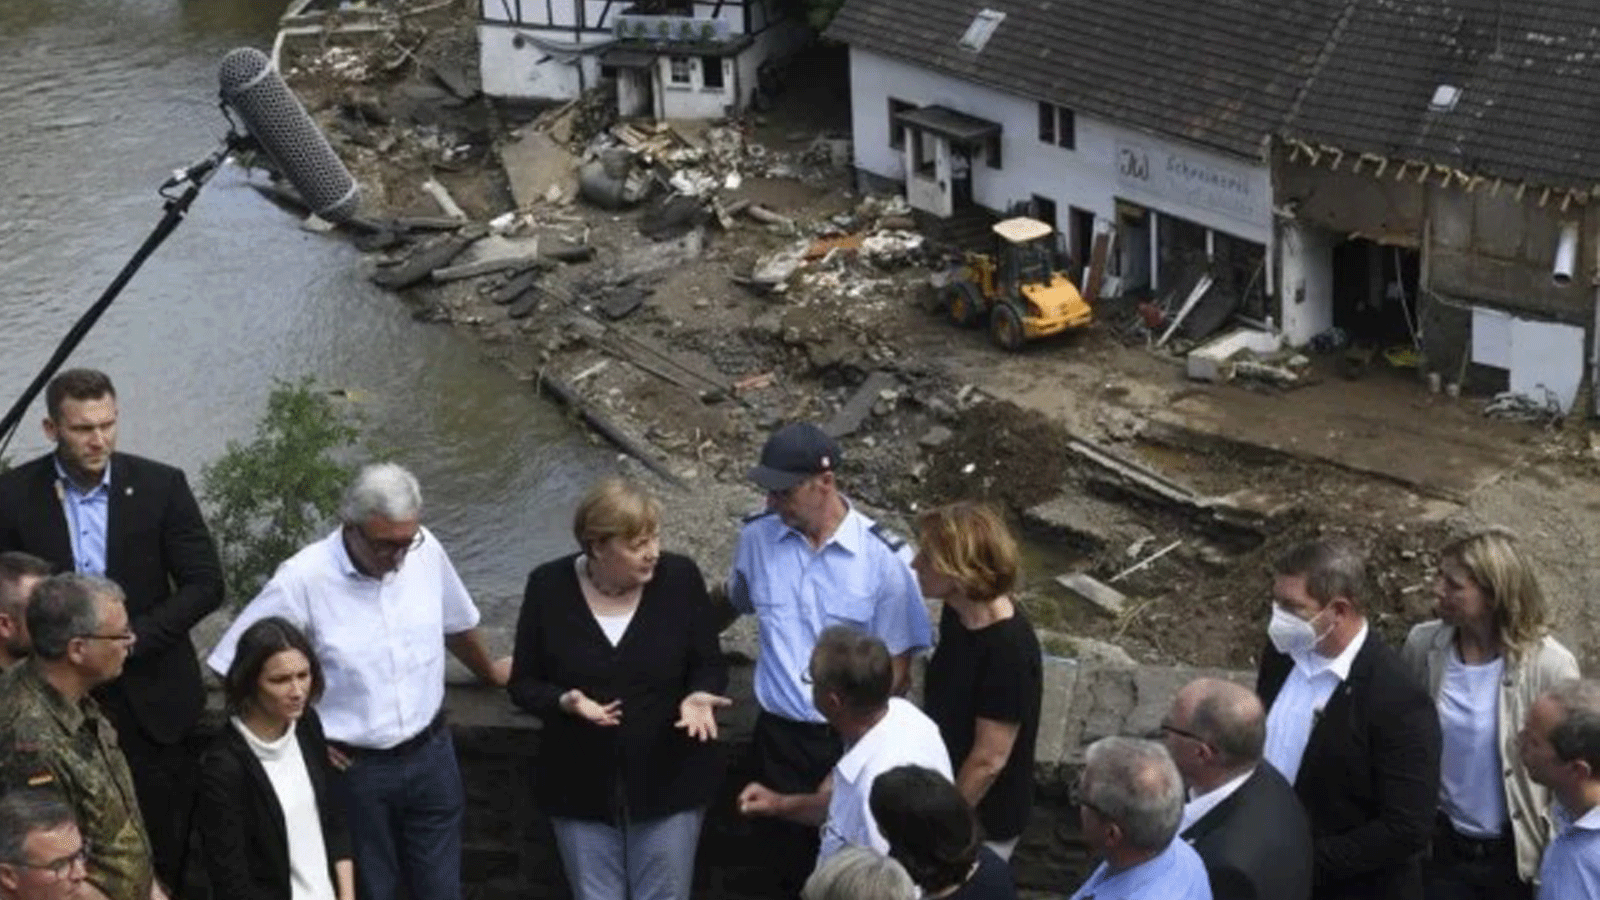 المستشارة الألمانية أنجيلا ميركل ورئيس وزراء ولاية راينلاند بالاتينات مالو دراير يتحدثان على جسر خلال زيارتهما في المناطق التي دمرتها الفيضانات في شولد، بالقرب من باد نوينار-أرويلر، ولاية راينلاند بالاتينات، غرب ألمانيا. 18 تموز/ يوليو 2021